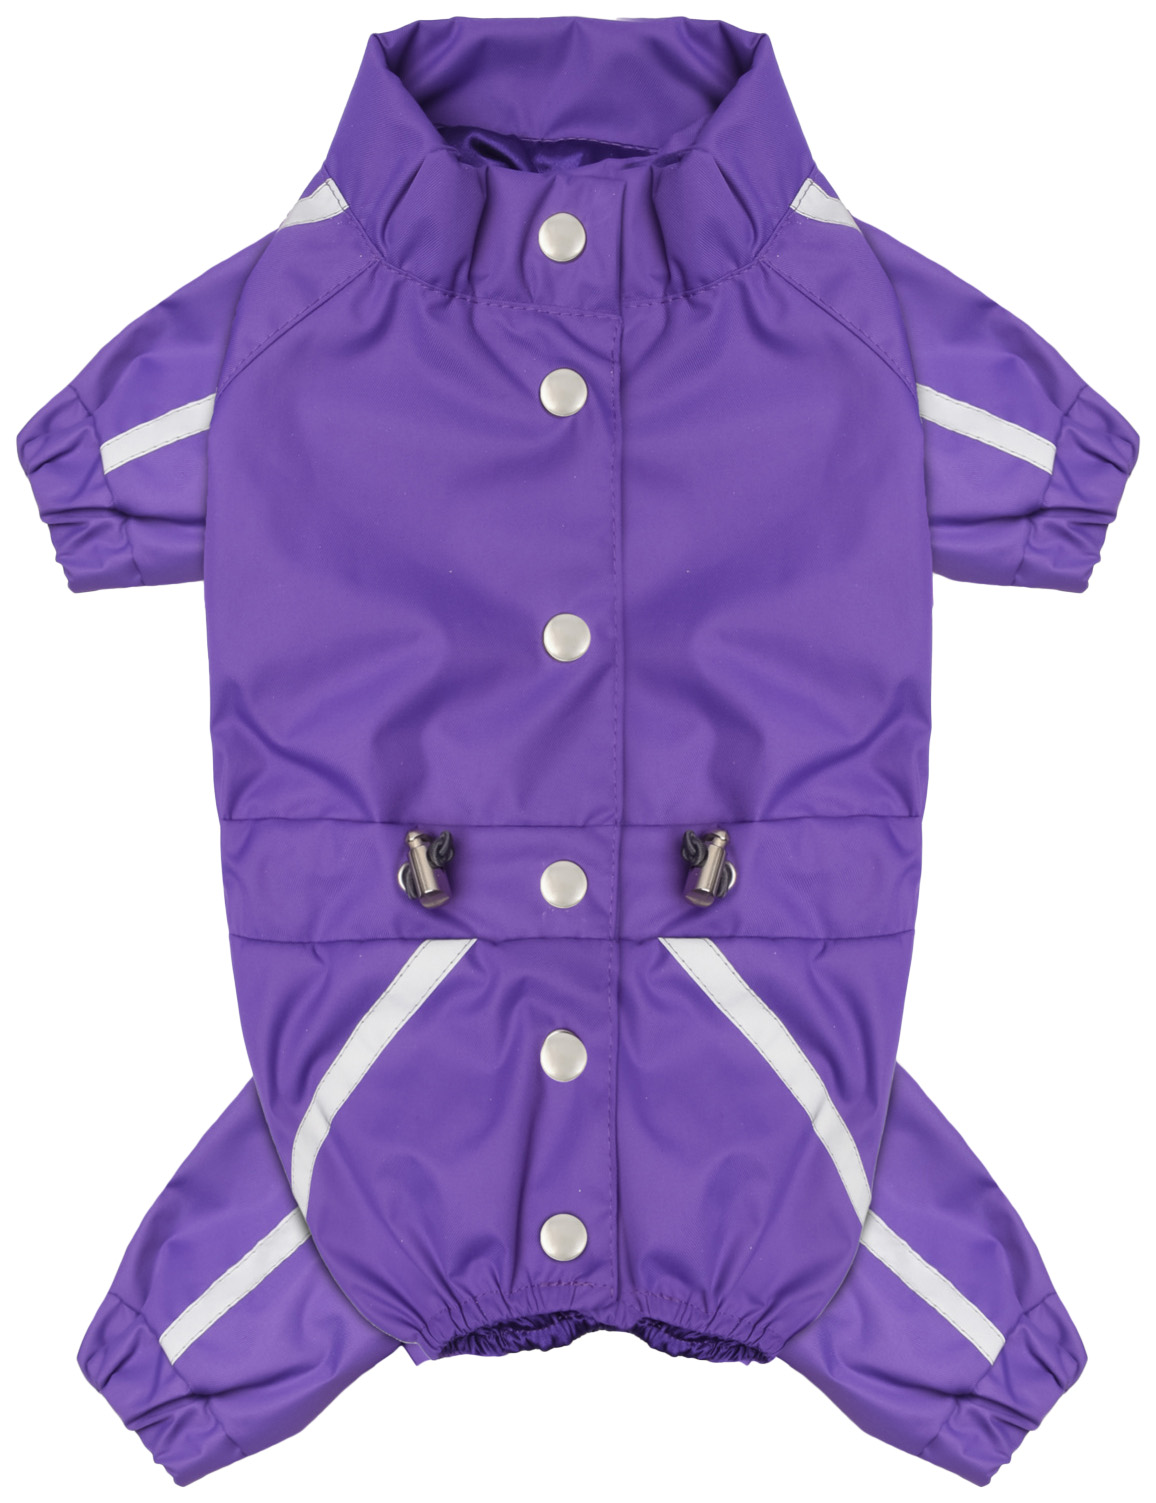 Комбинезон для собак Tappi одежда Фифти, женский, фиолетовый, M, длина спины 27 см